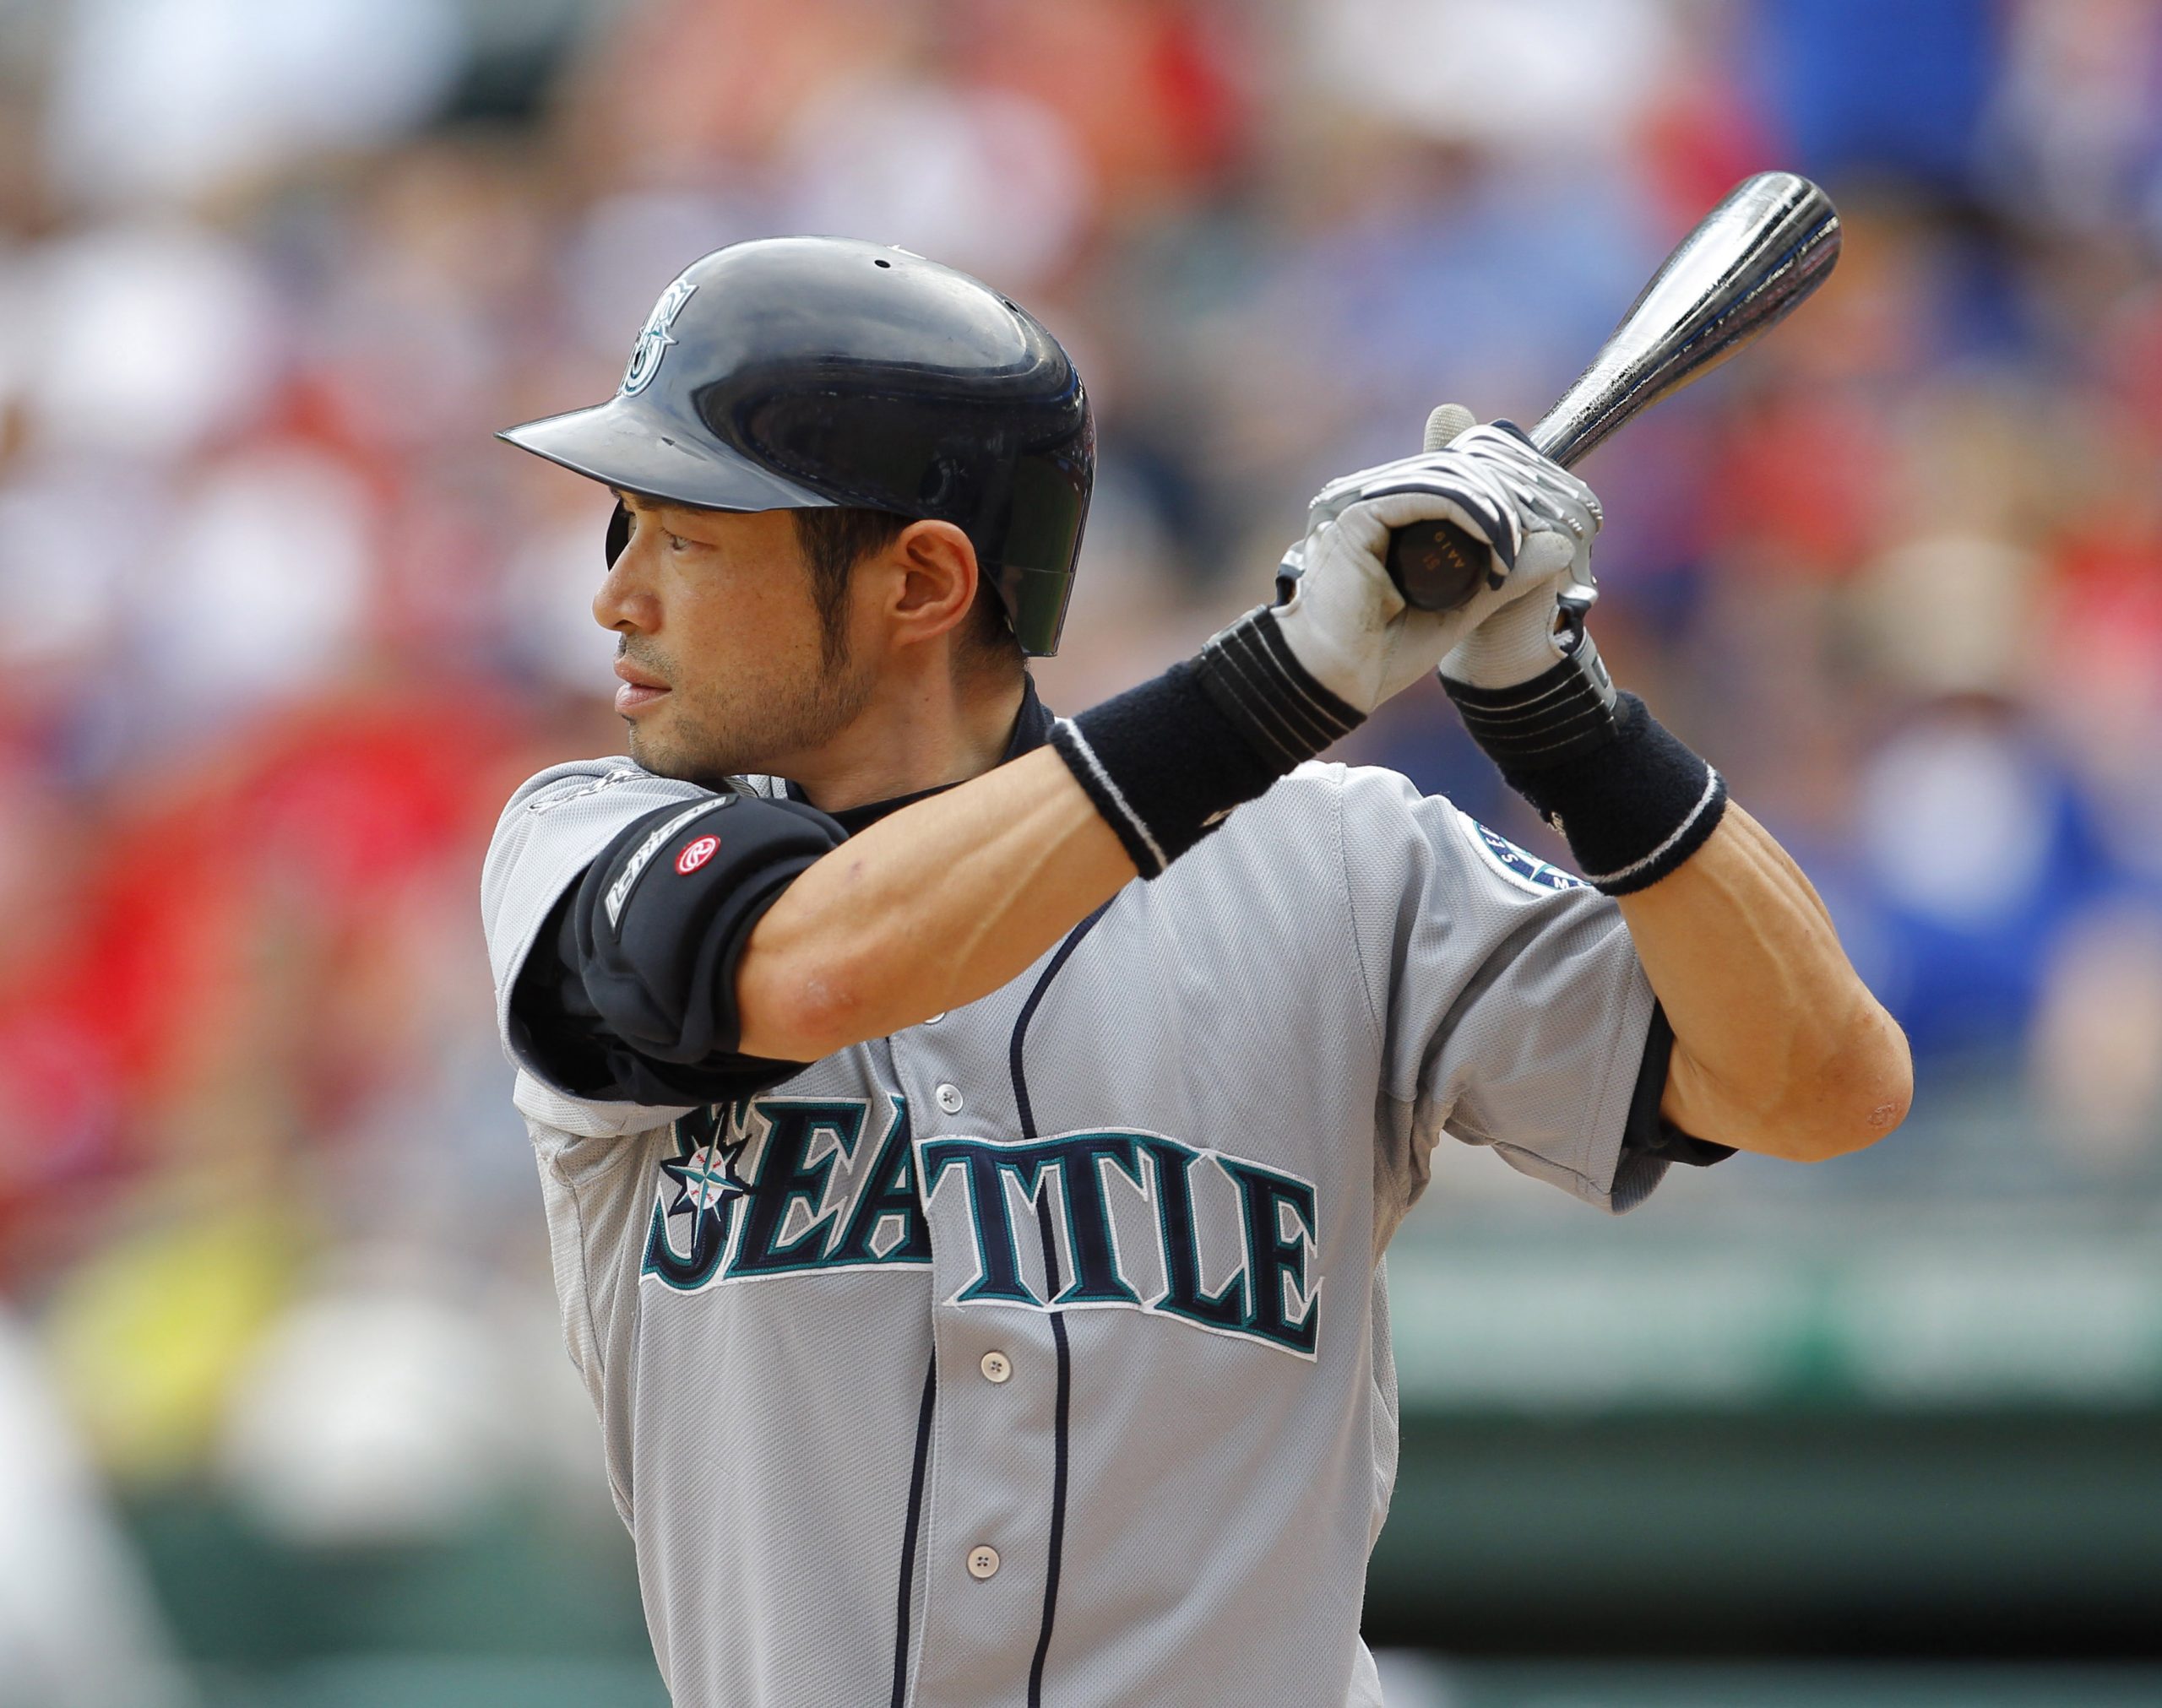 Ichiro Suzuki in action for the Seattle Mariners